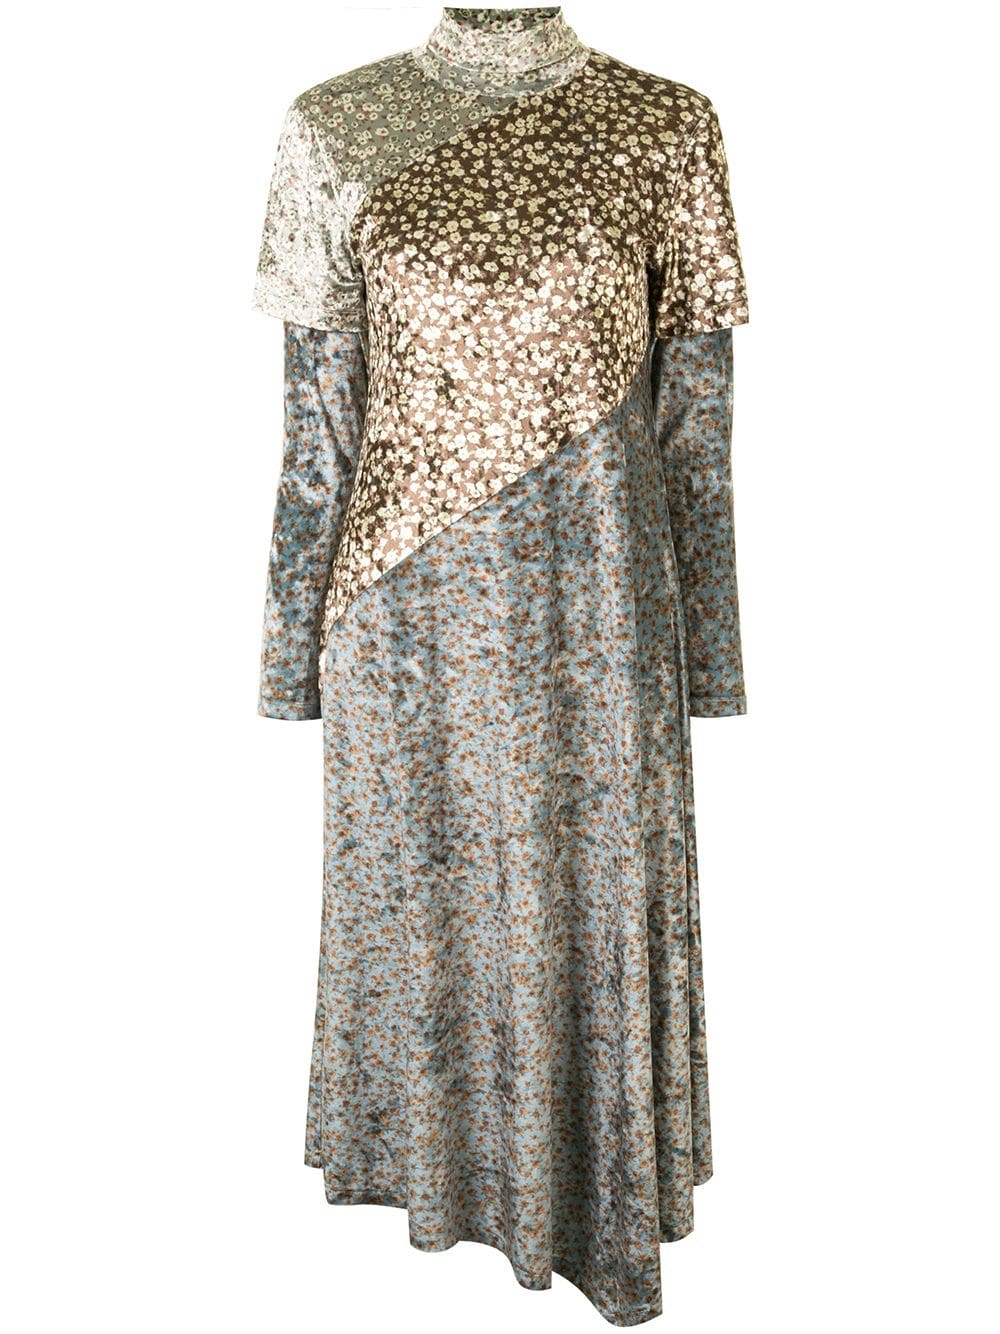 Image 1 of Goen.J layered floral velvet dress